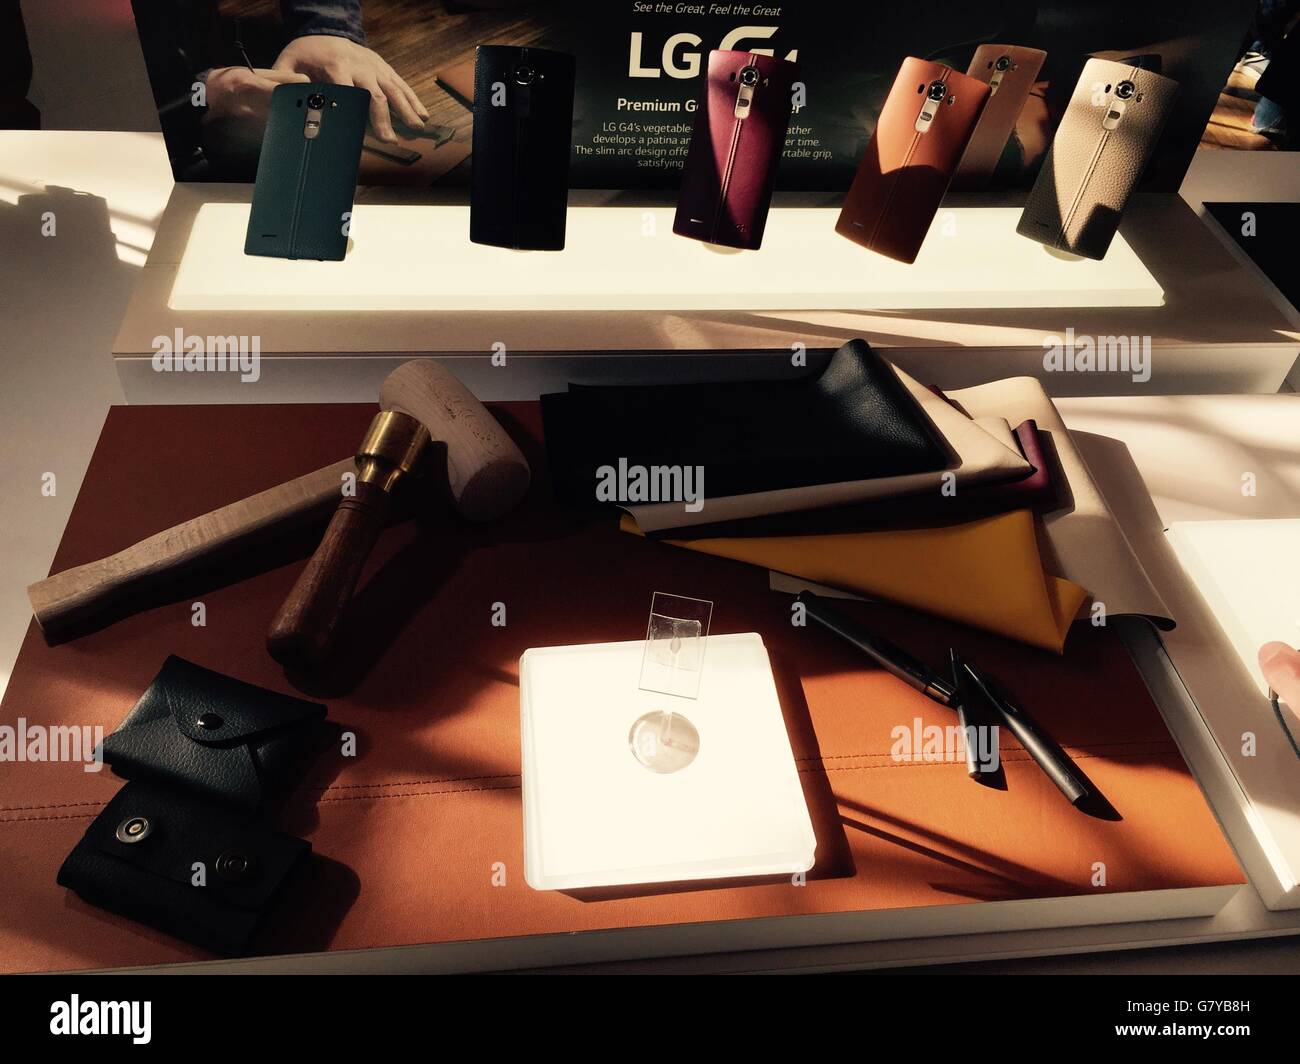 Coperture posteriori in vera pelle per il nuovo LG G4, in quanto il produttore ha fatto la sua ultima mossa nel mercato degli smartphone annunciando il nuovo dispositivo di punta. Foto Stock